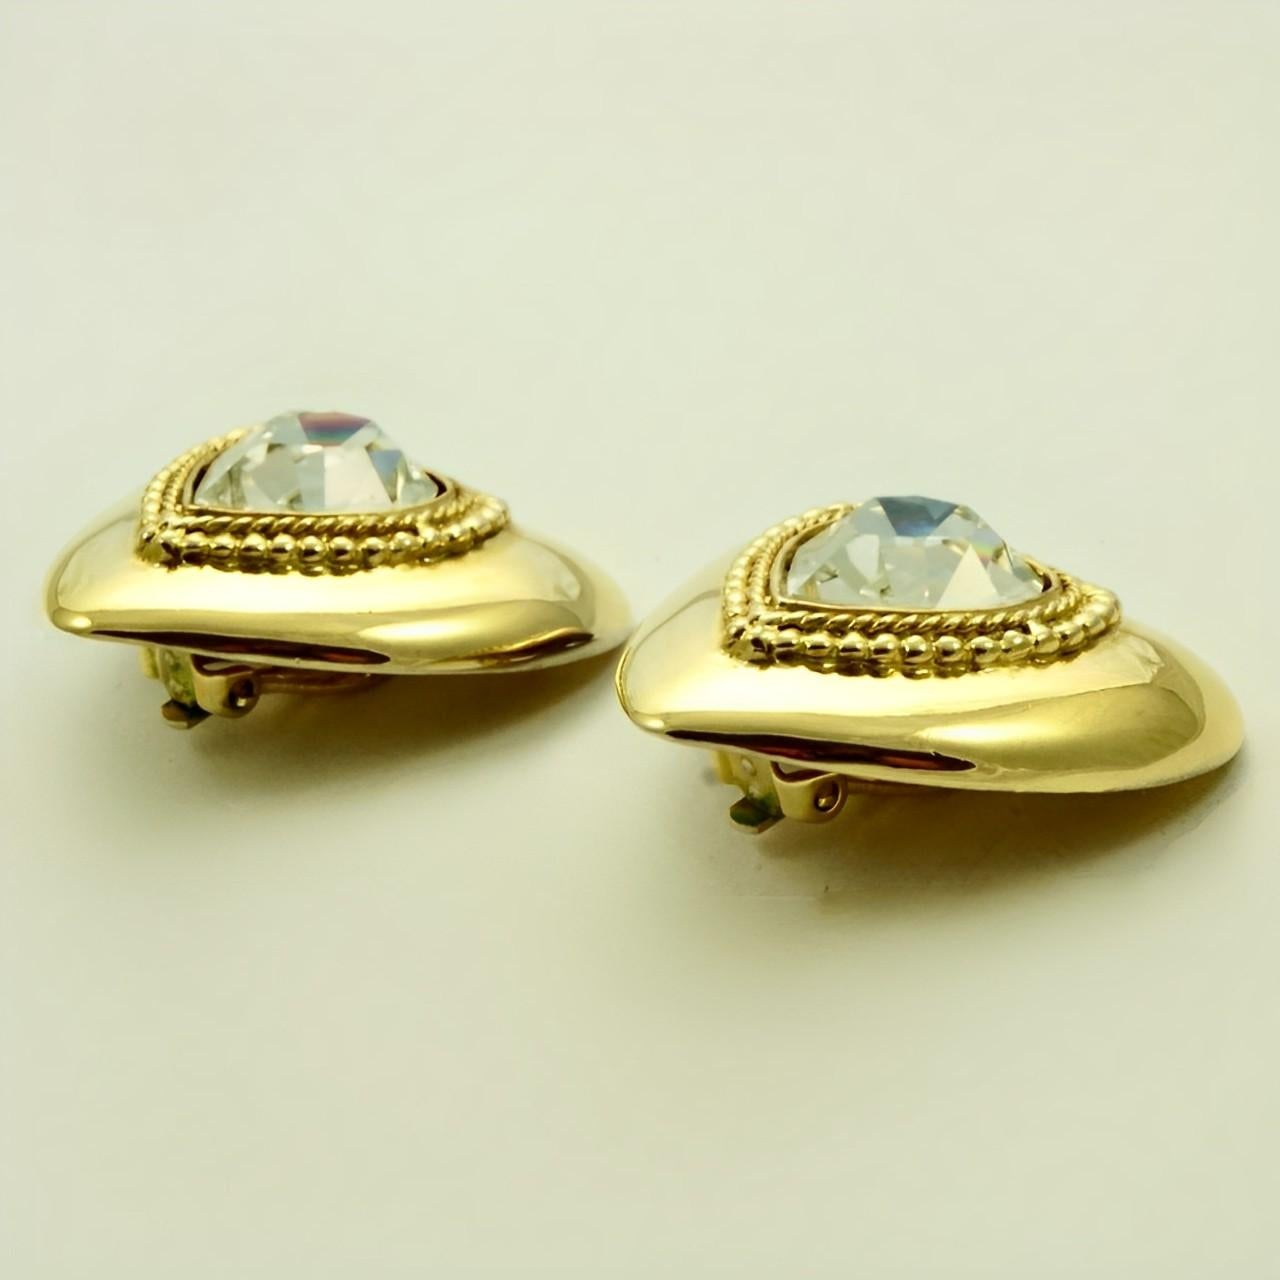 butler and wilson earrings